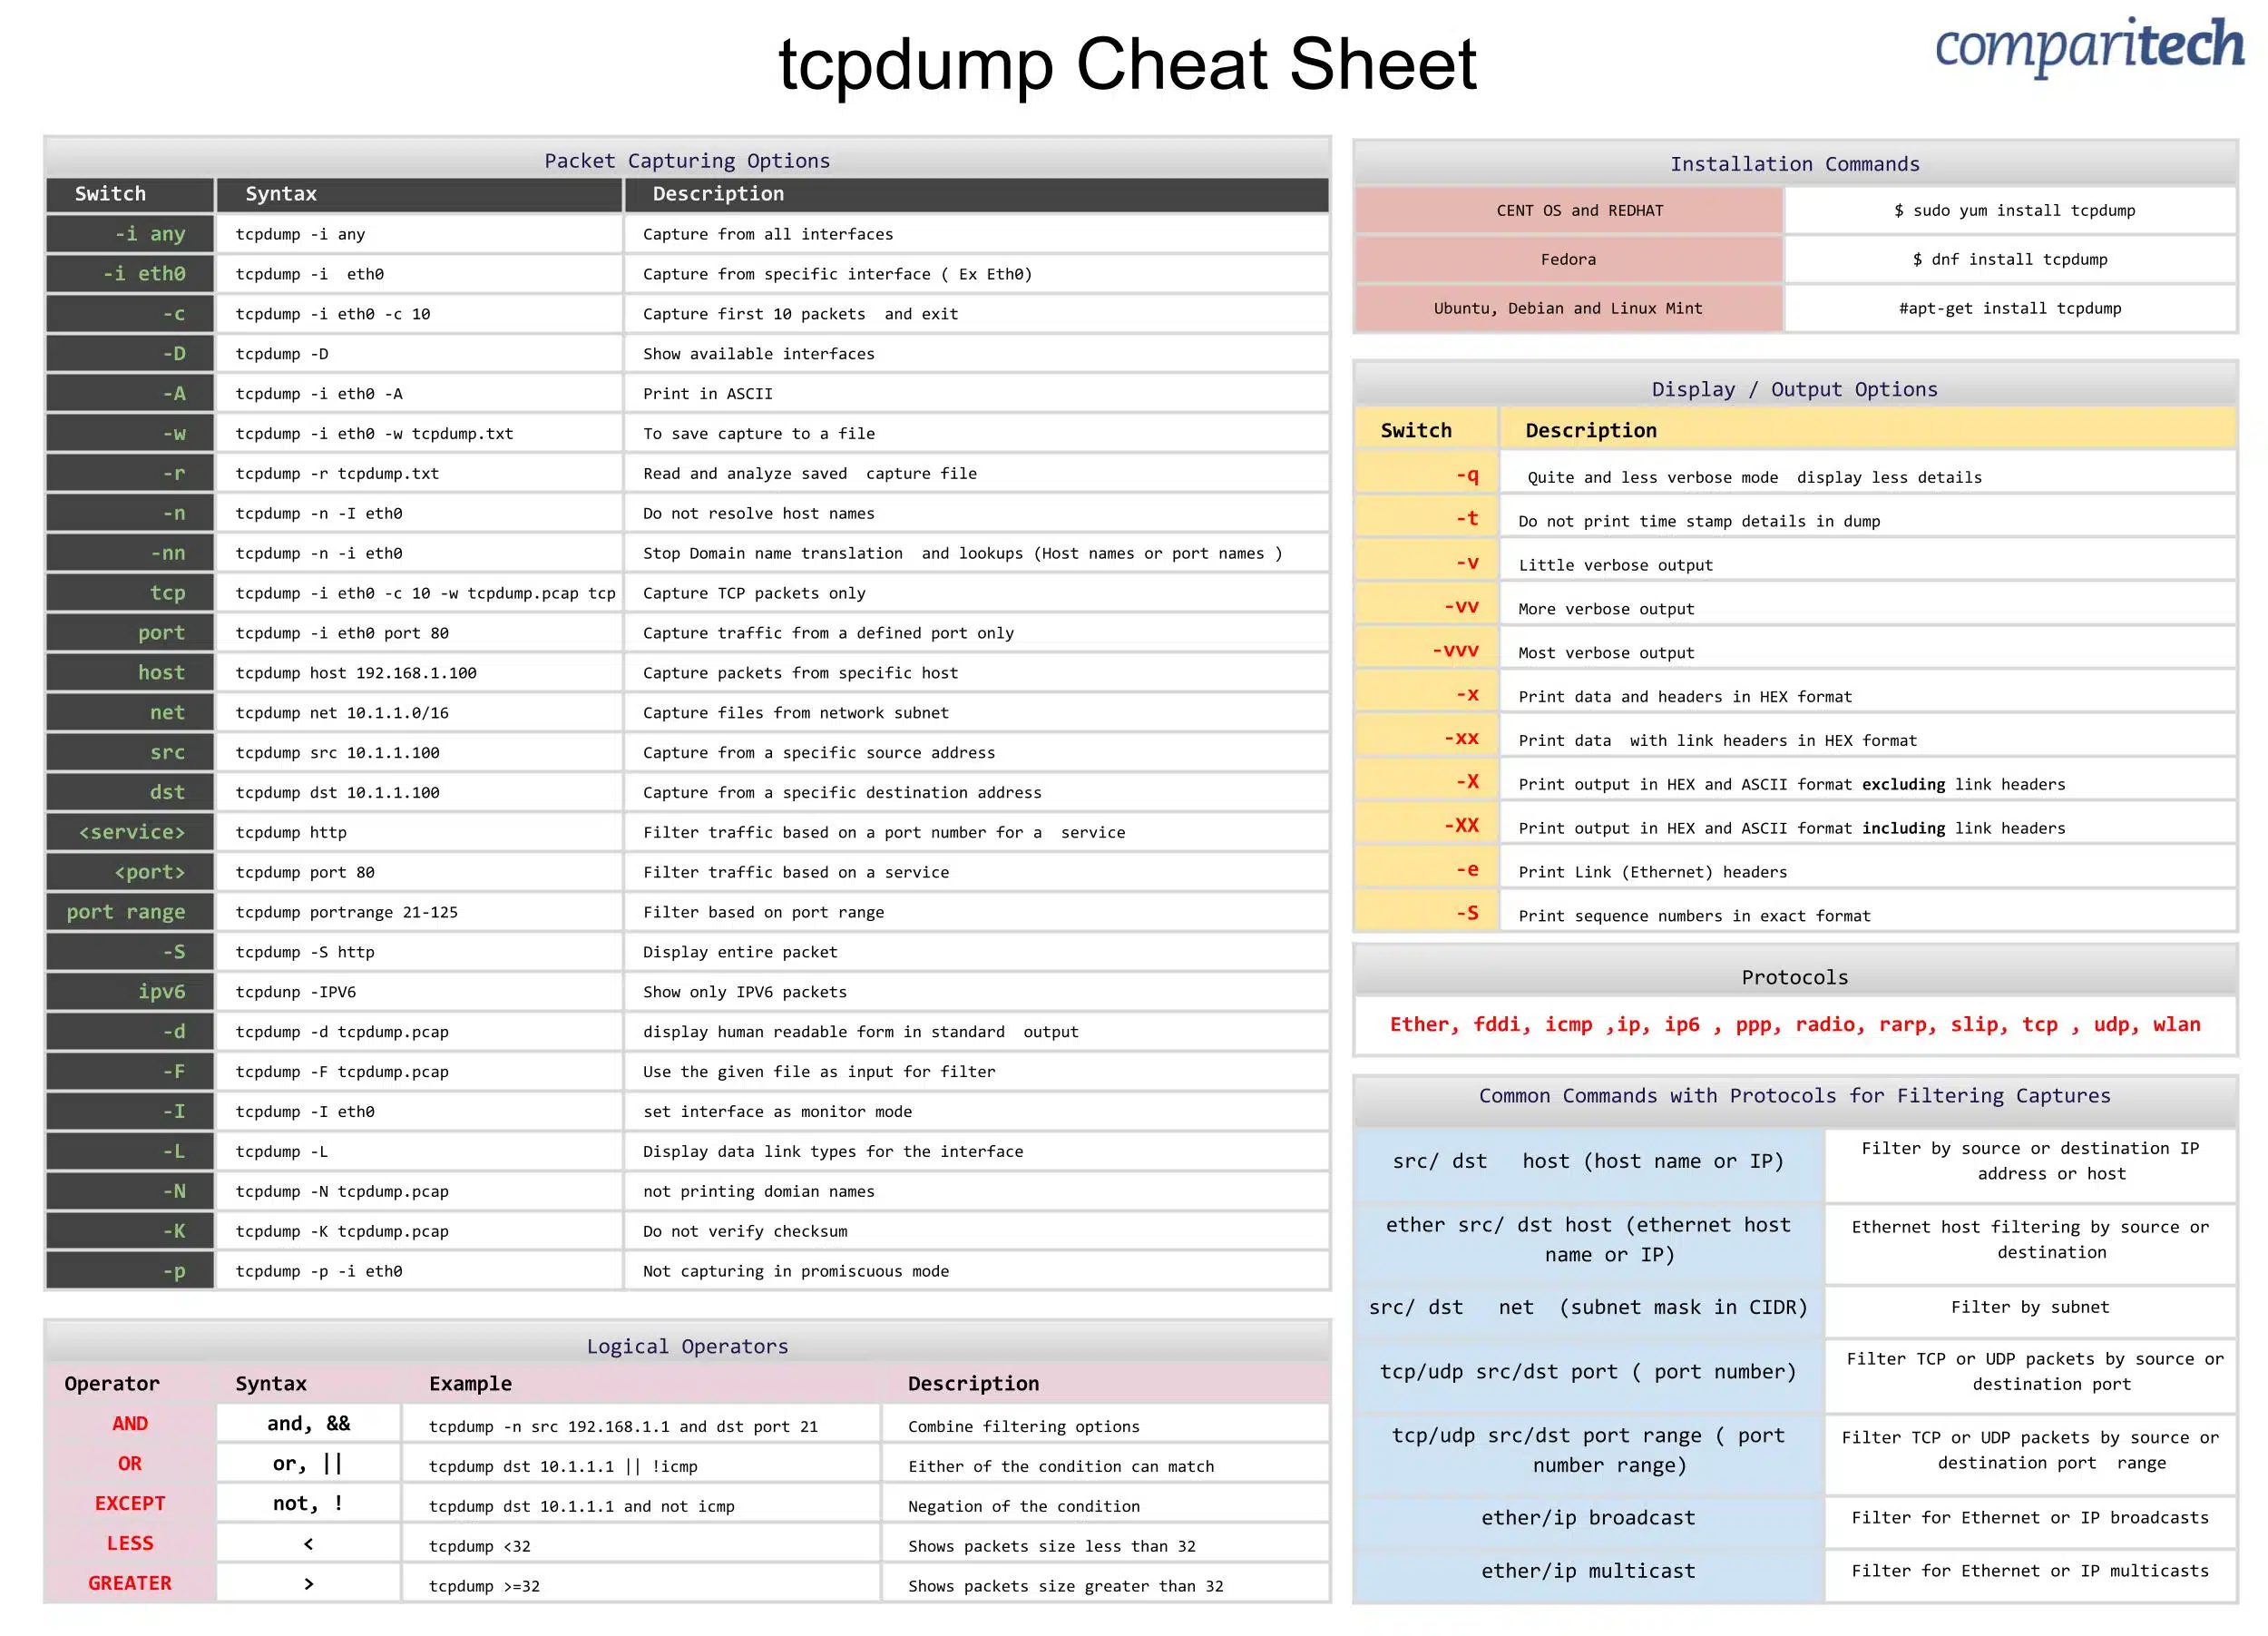 tcpdump cheat sheet